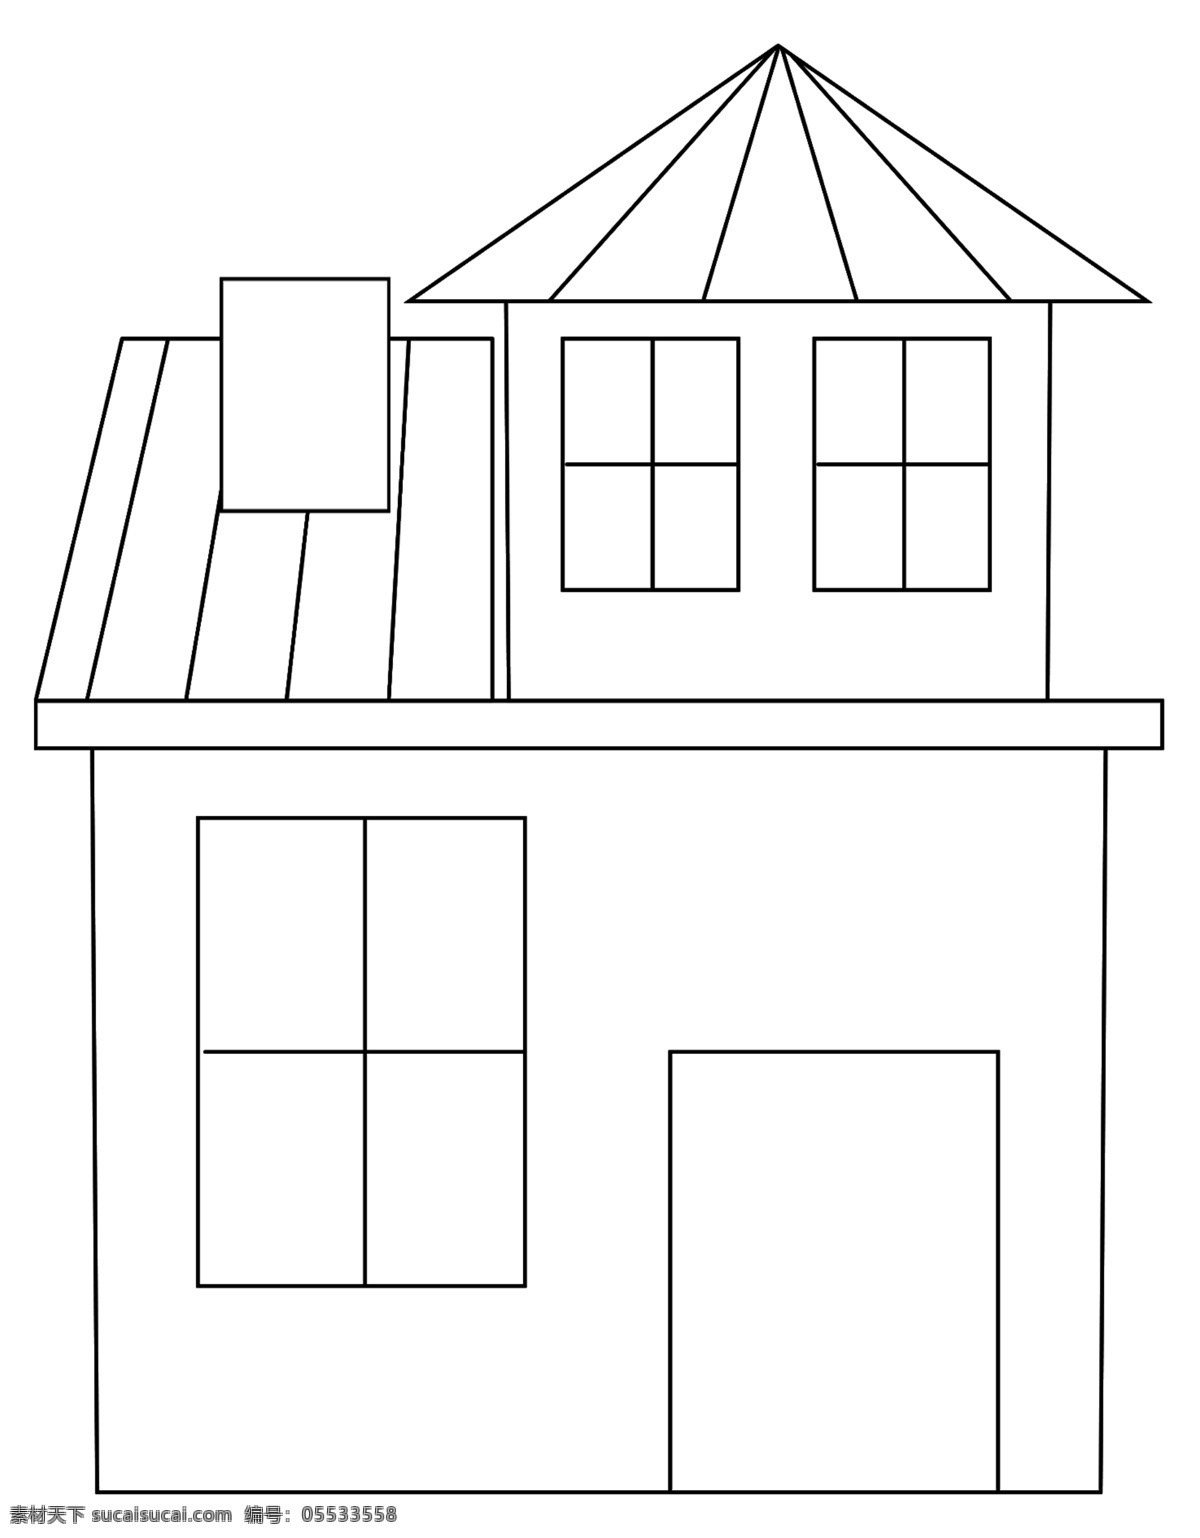 简约 线条 房子 图 线条房子 楼房 民房 简单房子 黑白 民居 卡通房子 卡通民居 极简